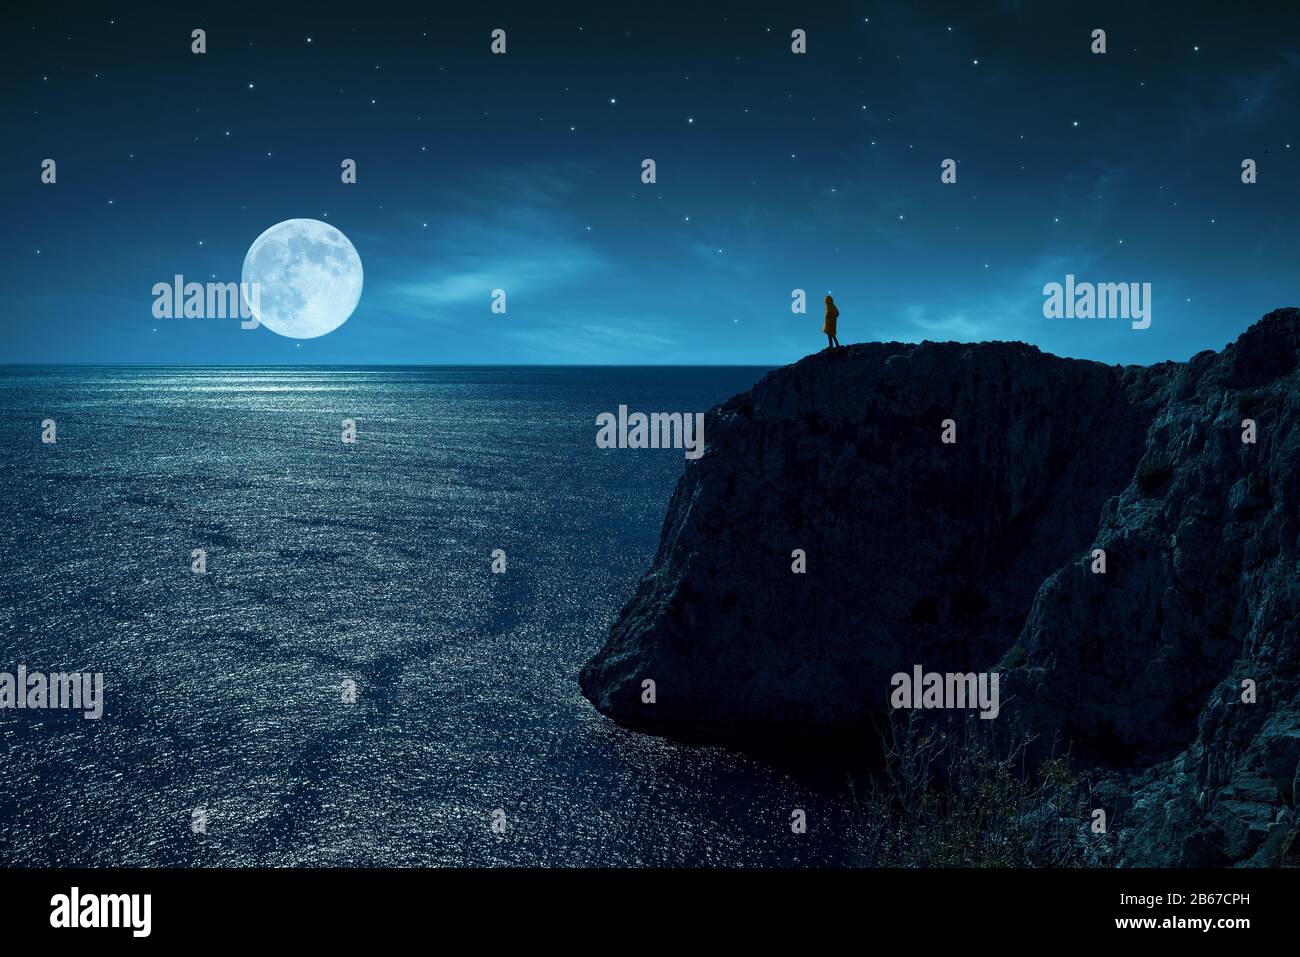 La persona está de pie en el borde de un acantilado contra el mar y la luna llena, bajo las estrellas y la luz de la luna Foto de stock